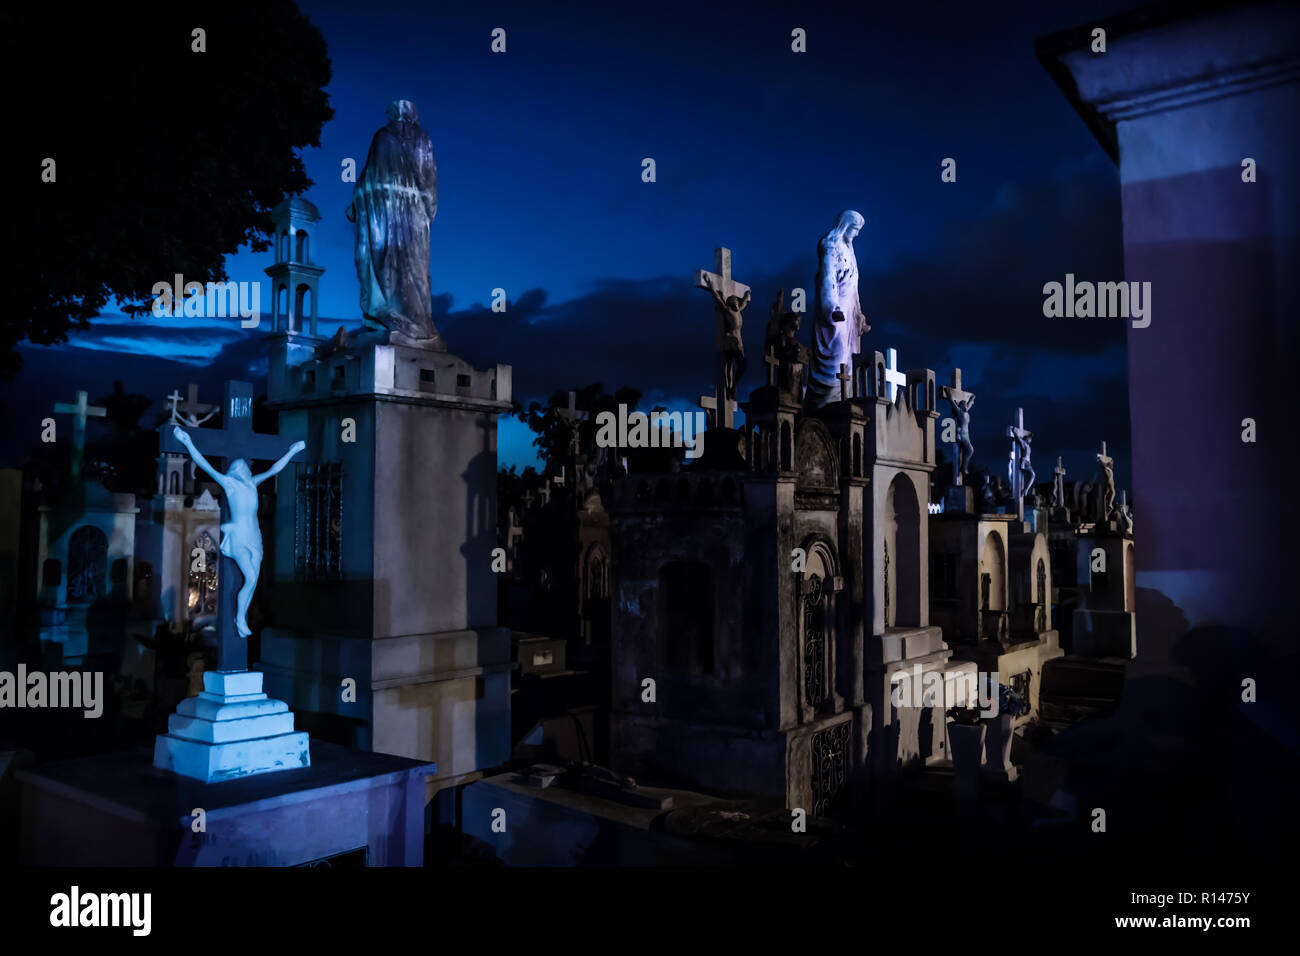 Jejus Statuen an dunklen Blau beleuchtet Grabsteine während der Dämmerung in Cementerio General in Merida, Mexiko Stockfoto